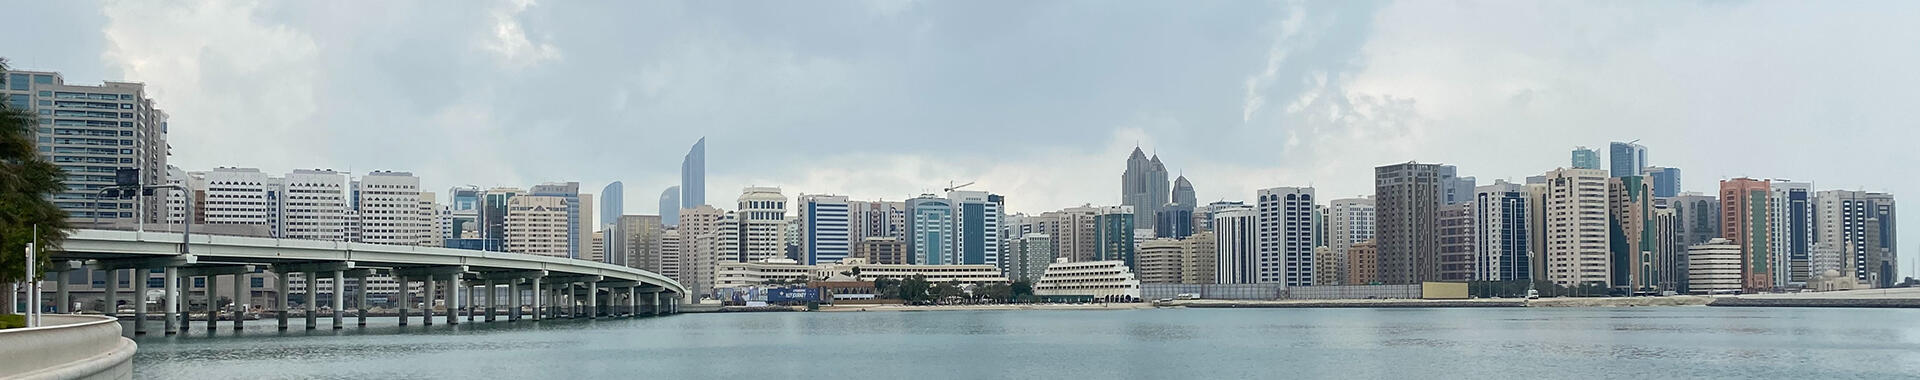 World Investment Forum 2023, Abu Dhabi. Image: Larry Williams / Unsplash